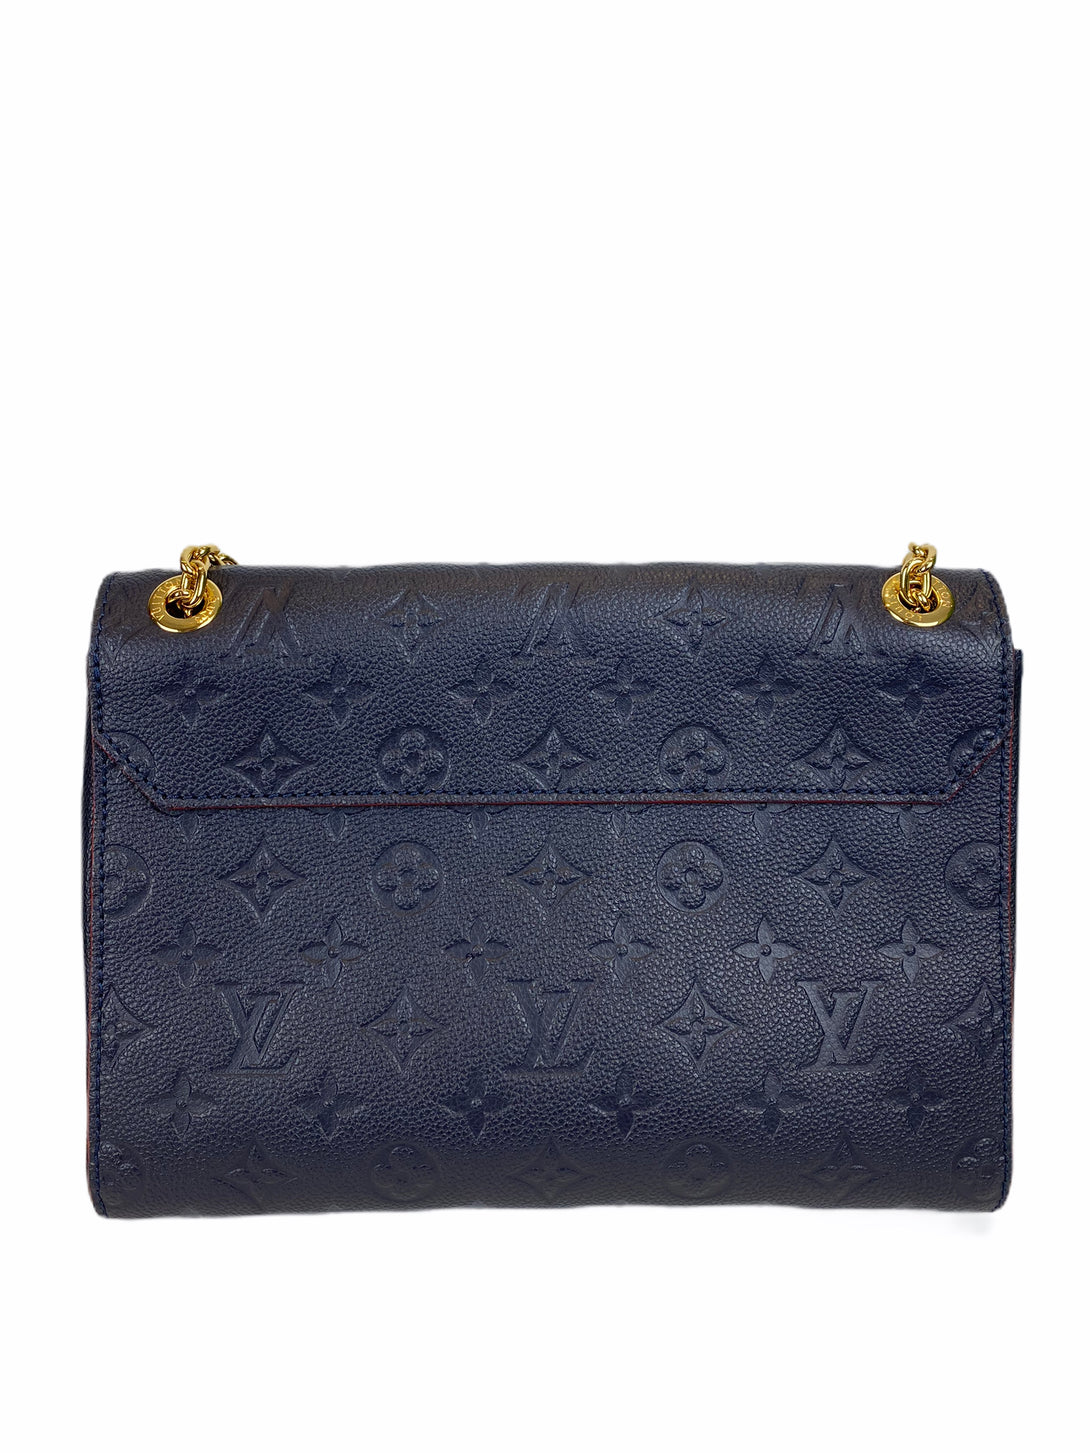 Louis Vuitton Navy "Vavin" PM Monogram Empreinte Leather Crossbody - As Seen on Instagram 29/07/20 - Siopaella Designer Exchange